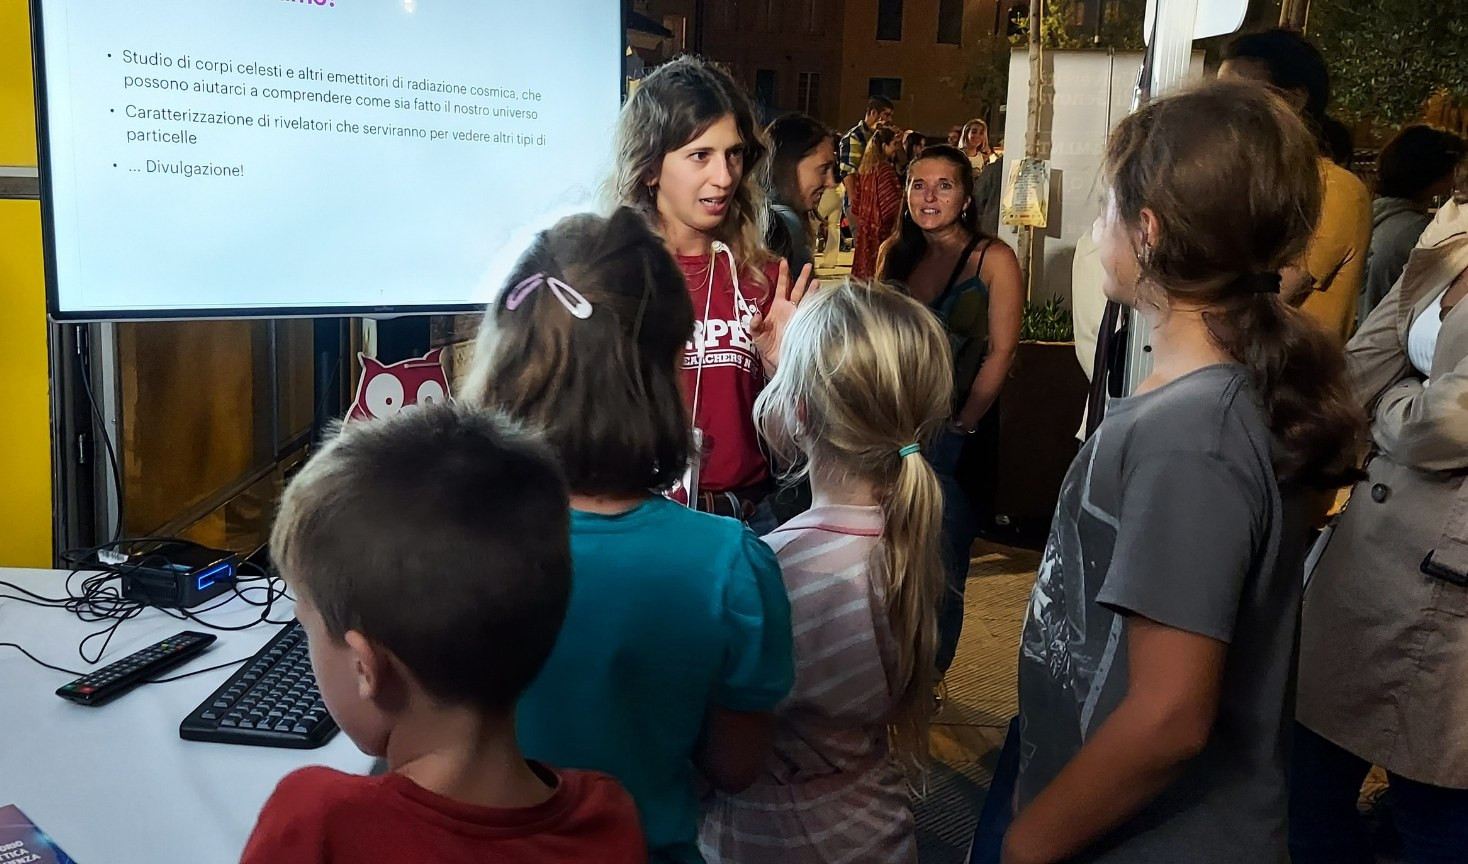 Notte dei ricercatori: la maratona di scienza a Genova incanta grandi e piccini